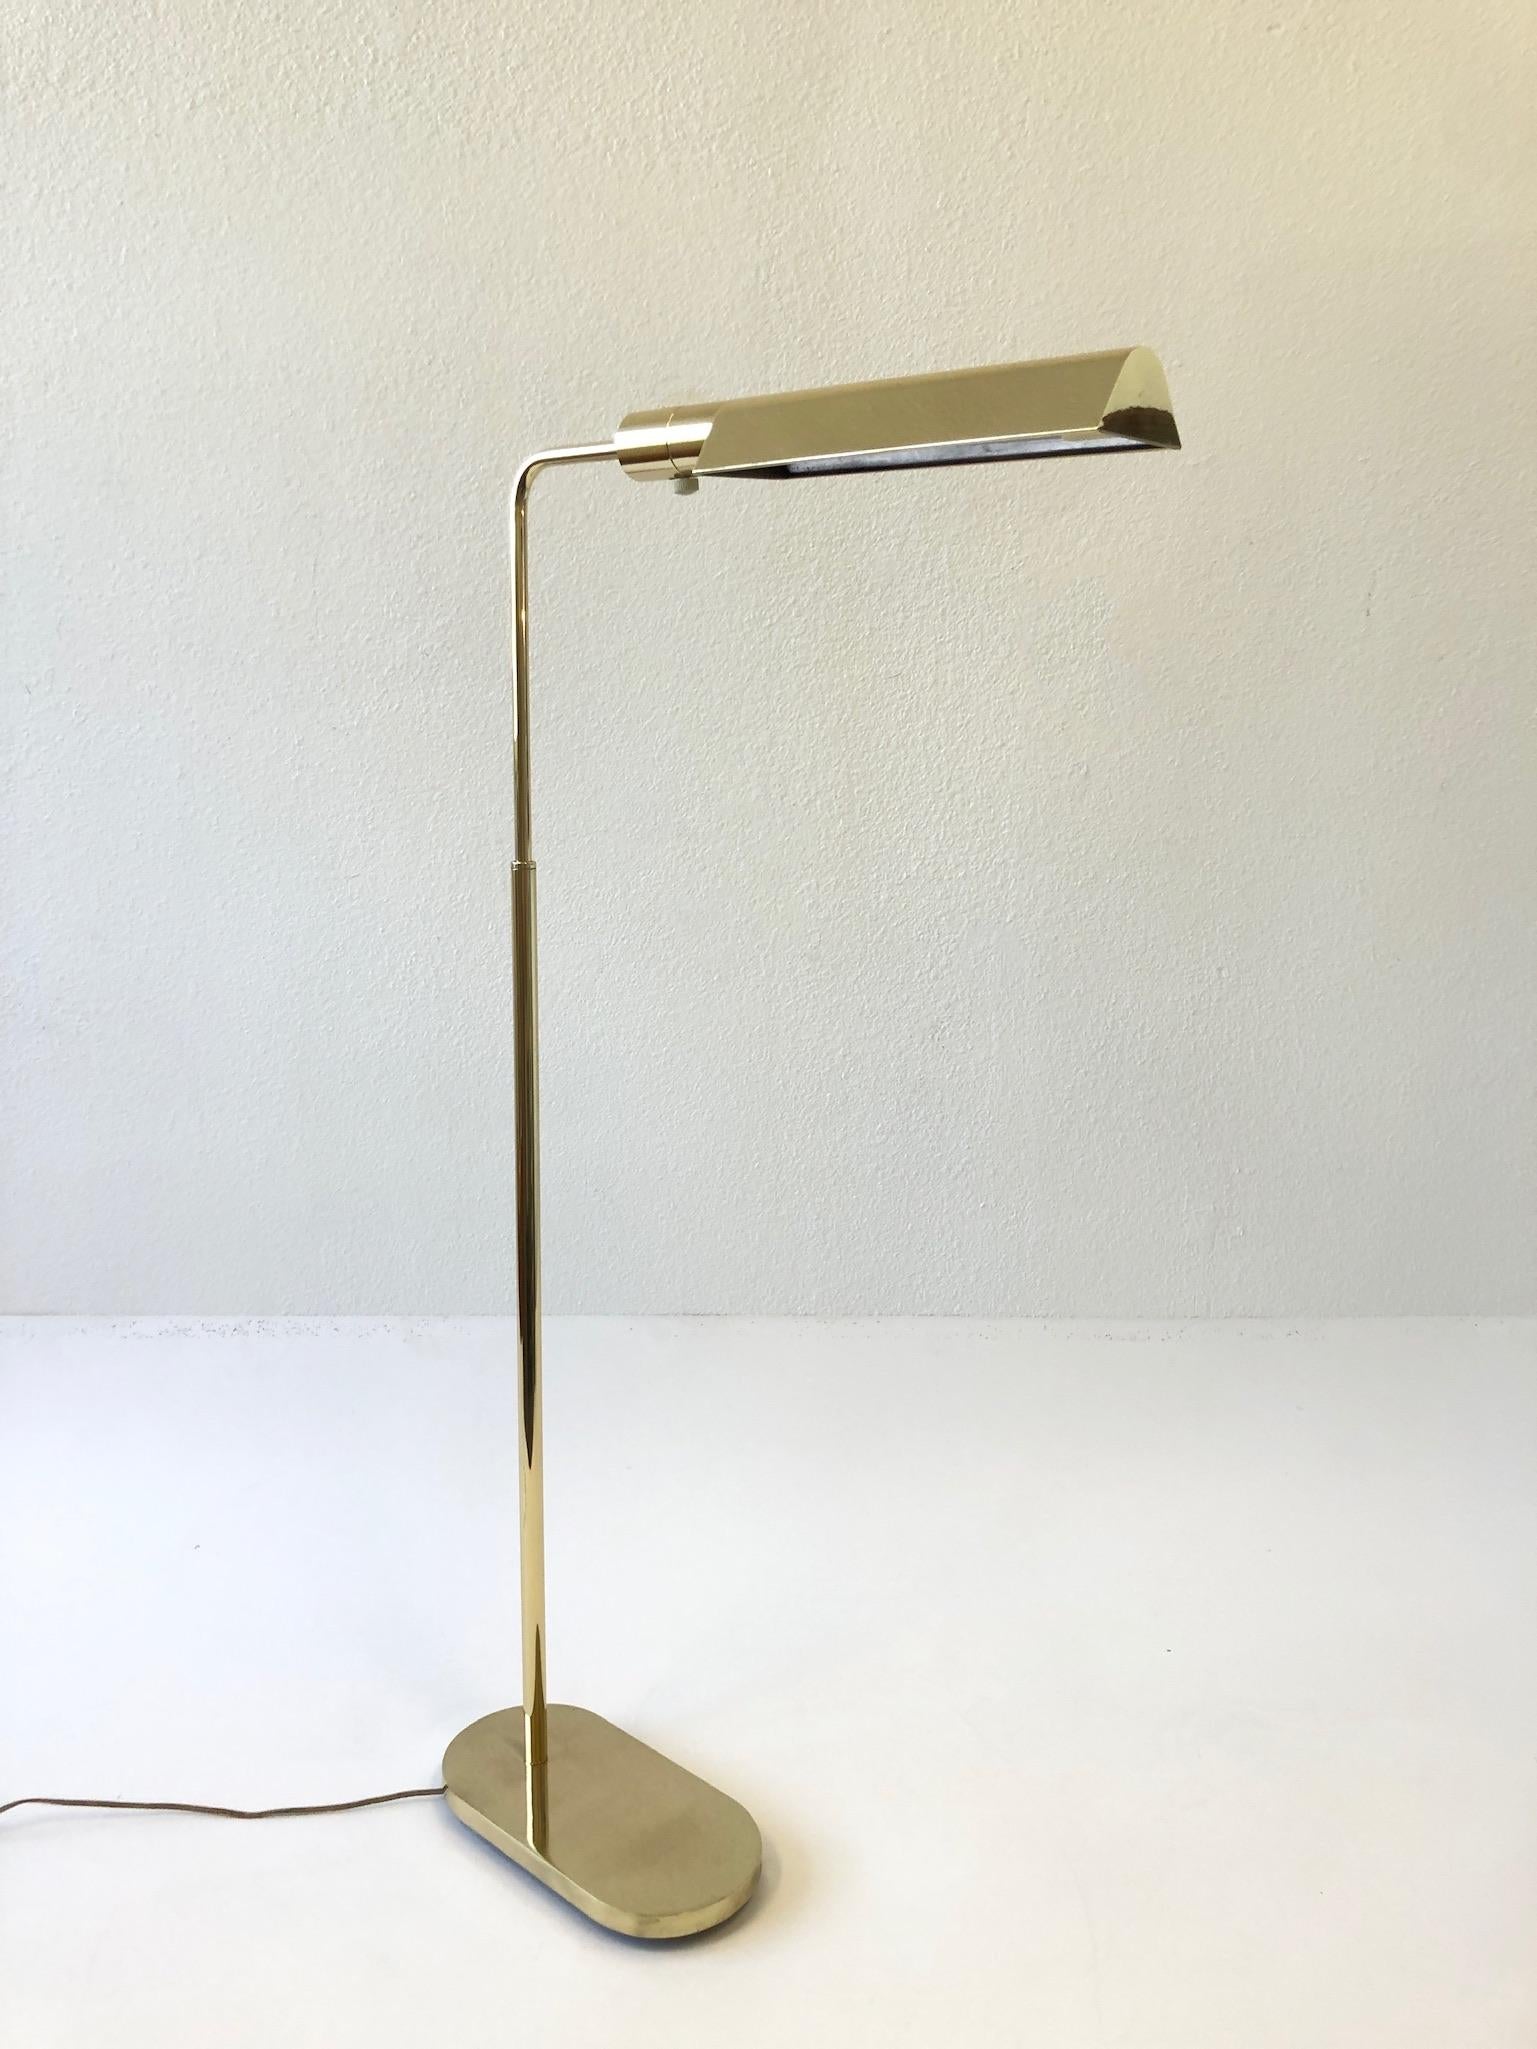 Verstellbare Stehlampe aus poliertem Messing aus den 1970er Jahren von Casella Lighting.
Wenn der ganze Weg nach oben die hohe ist 48 